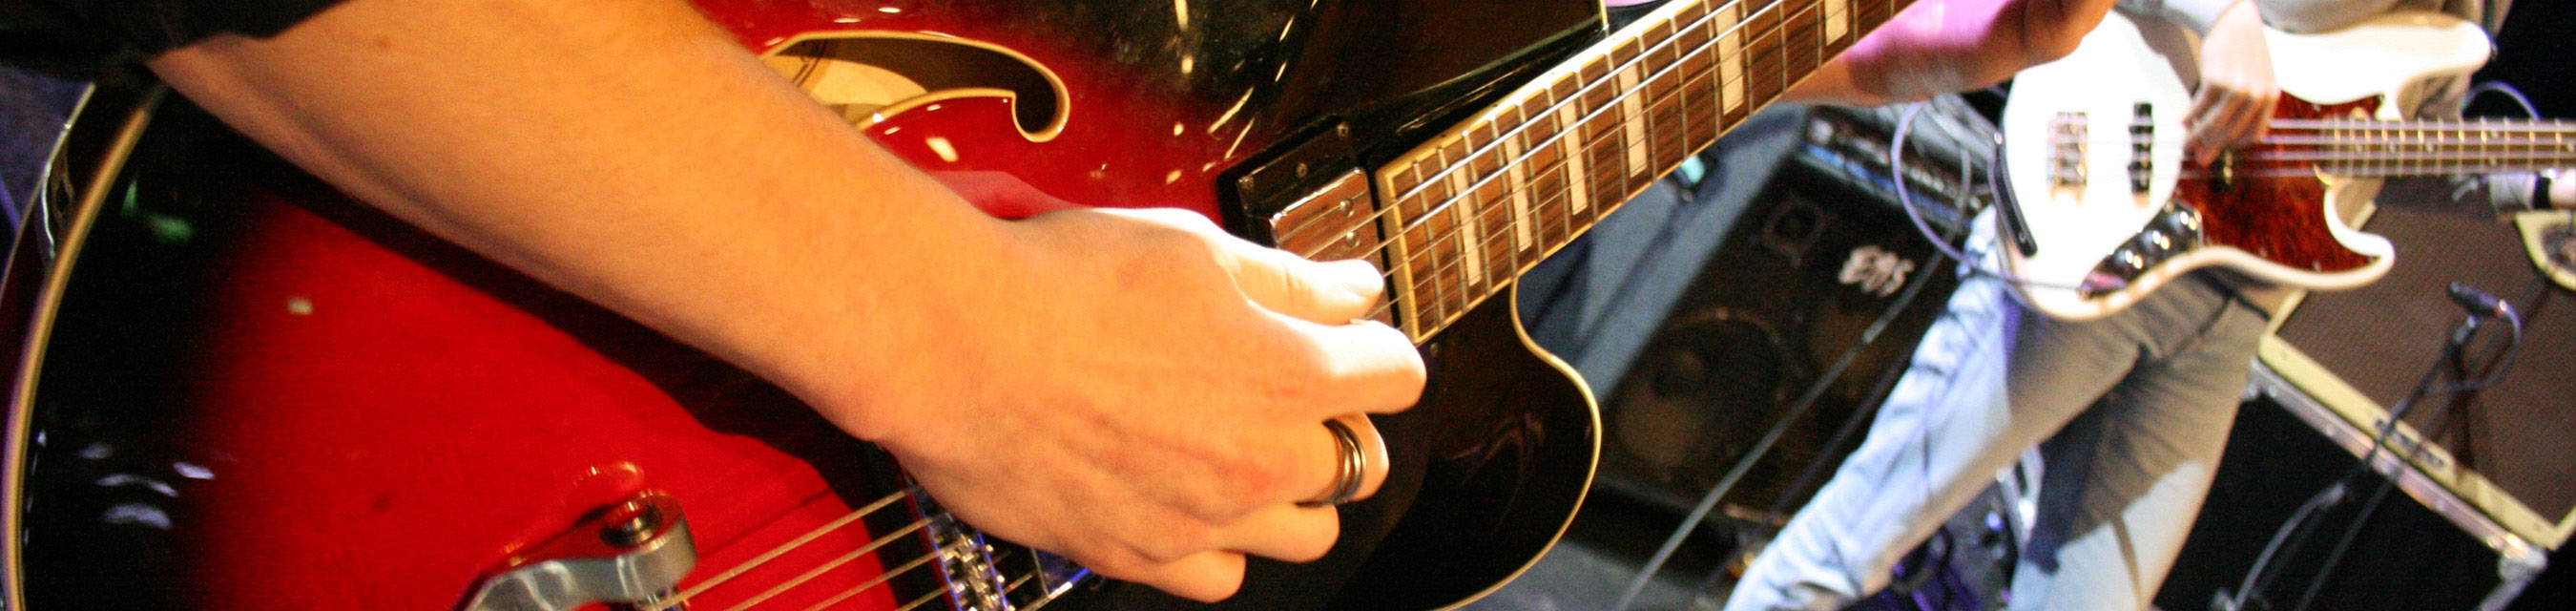 Närbild på elev med röd gitarr, i bakgrunden en annan elev med vit gitarr